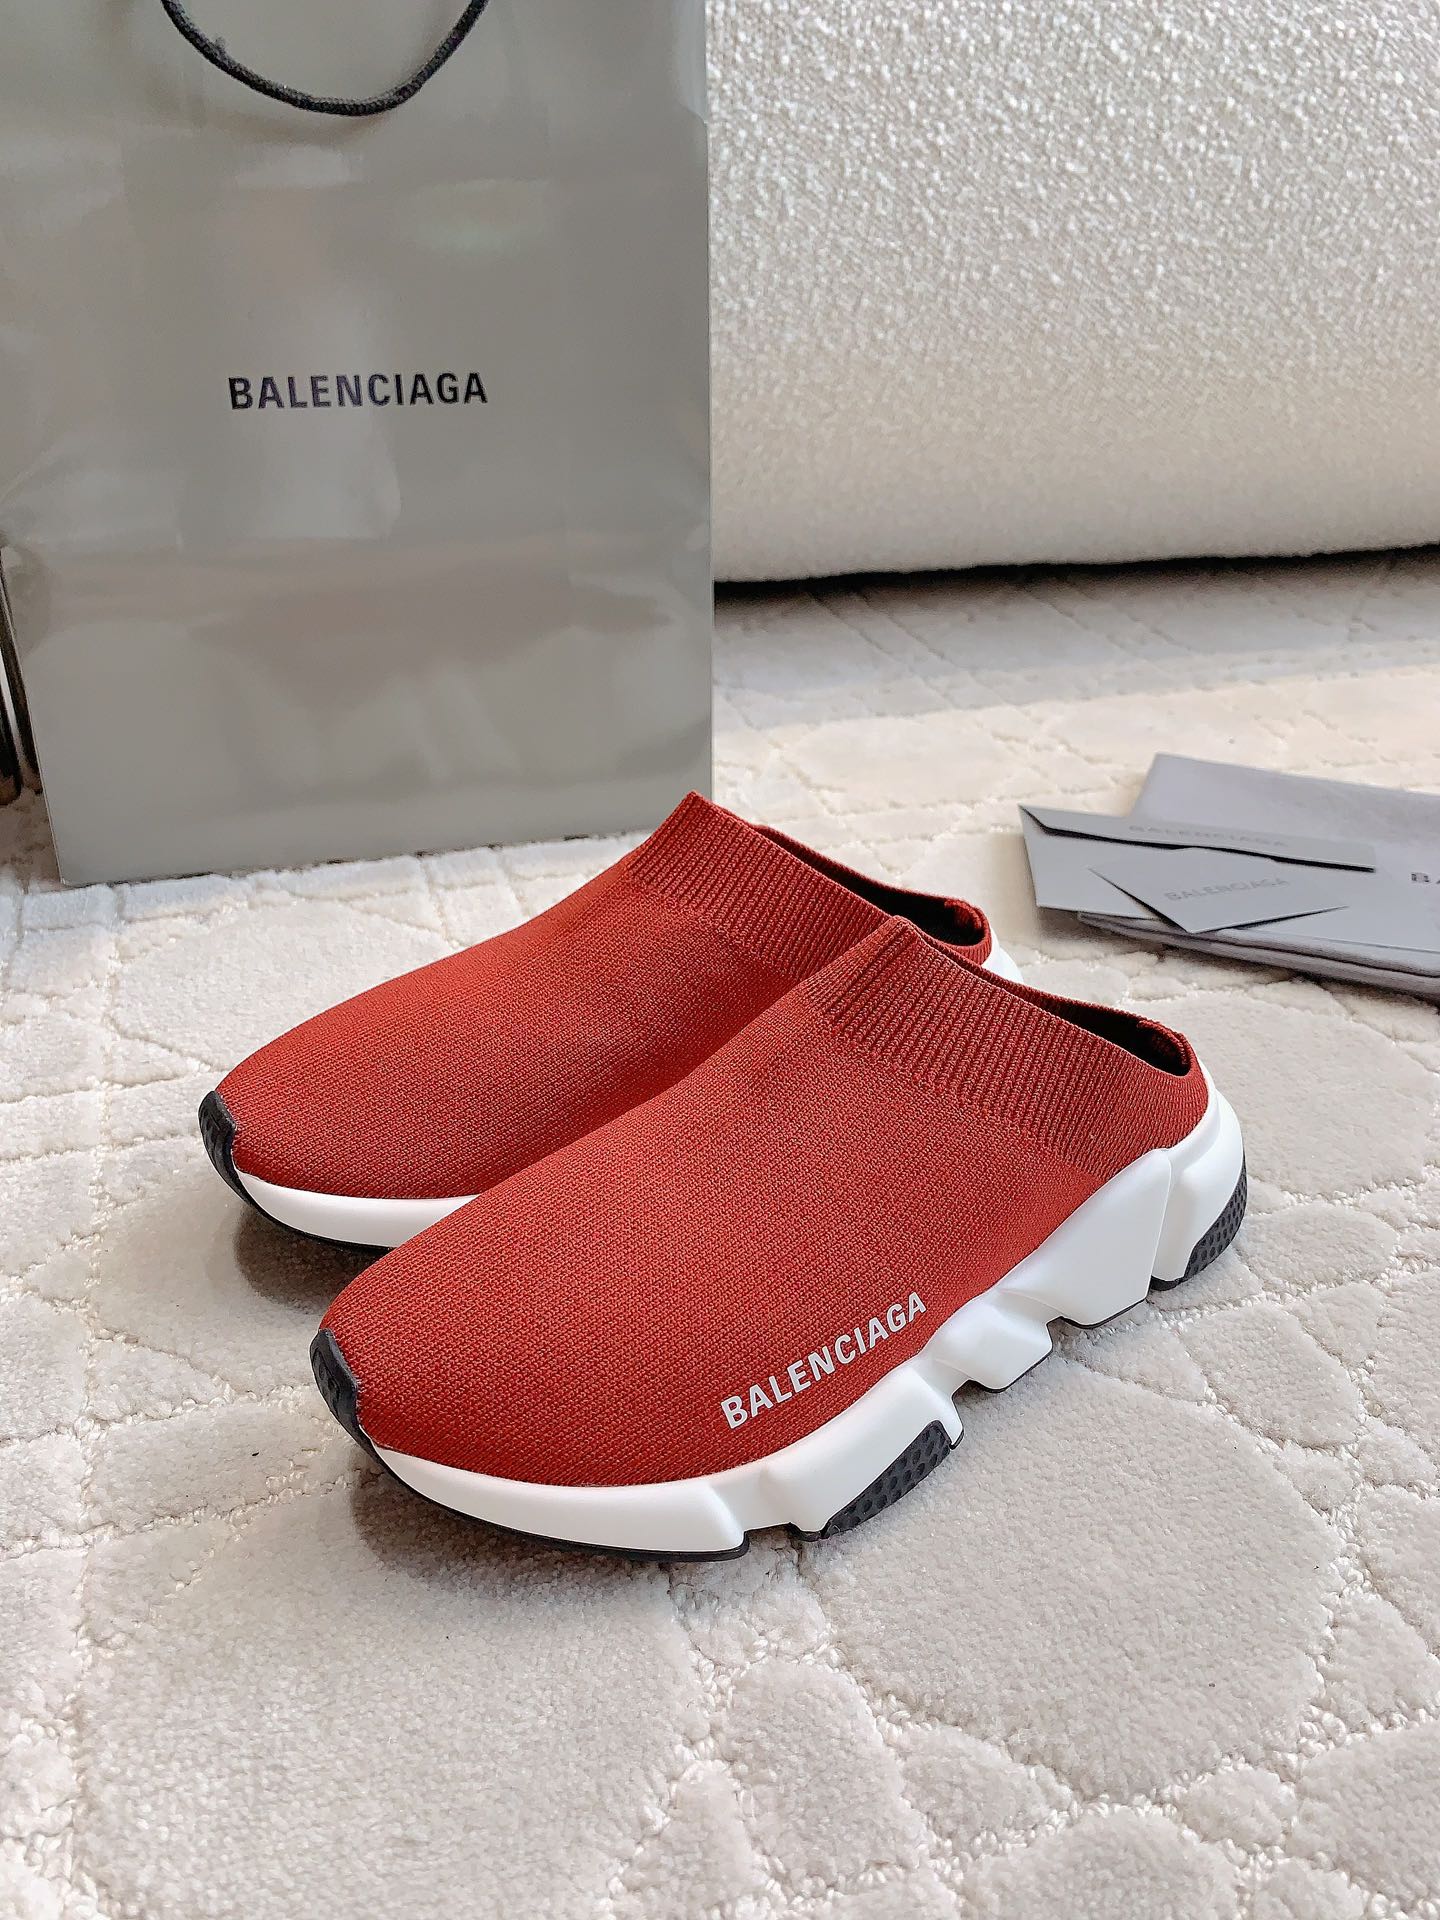 海外セレブが愛用する balenciaga レディース スニーカーコピー スリッパ 履くのが簡単で 男女兼用 シンプル 軽量 レッド_2